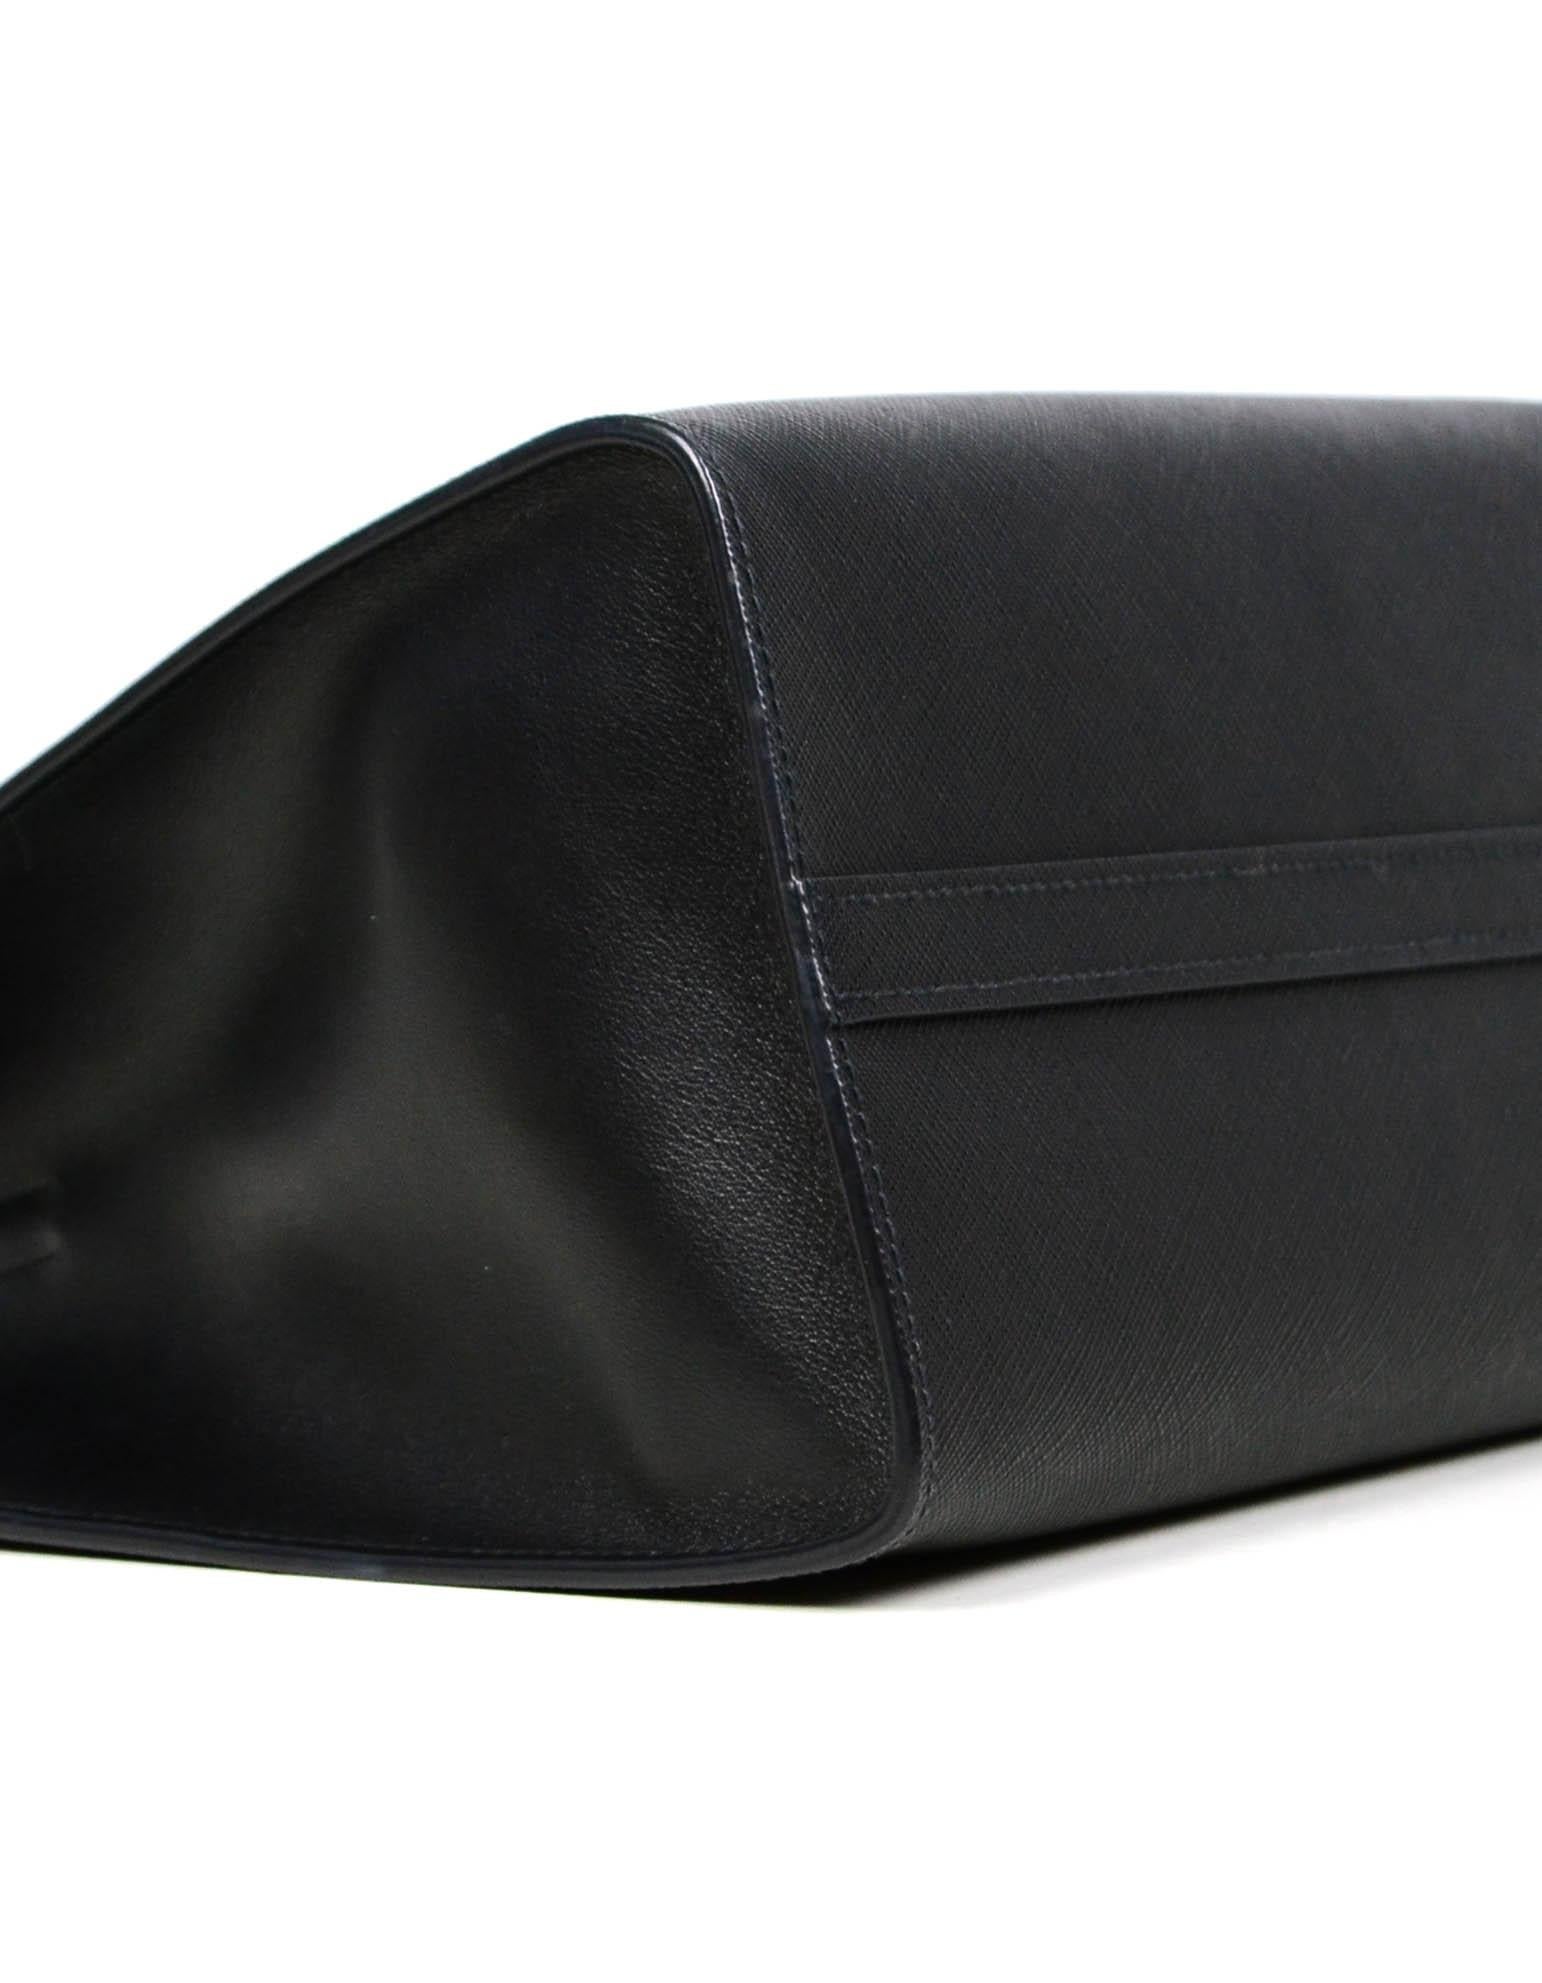 Prada Nero Black Saffiano Leather Lux Convertible Tote Bag w/ Strap 1BA118 In Excellent Condition In New York, NY